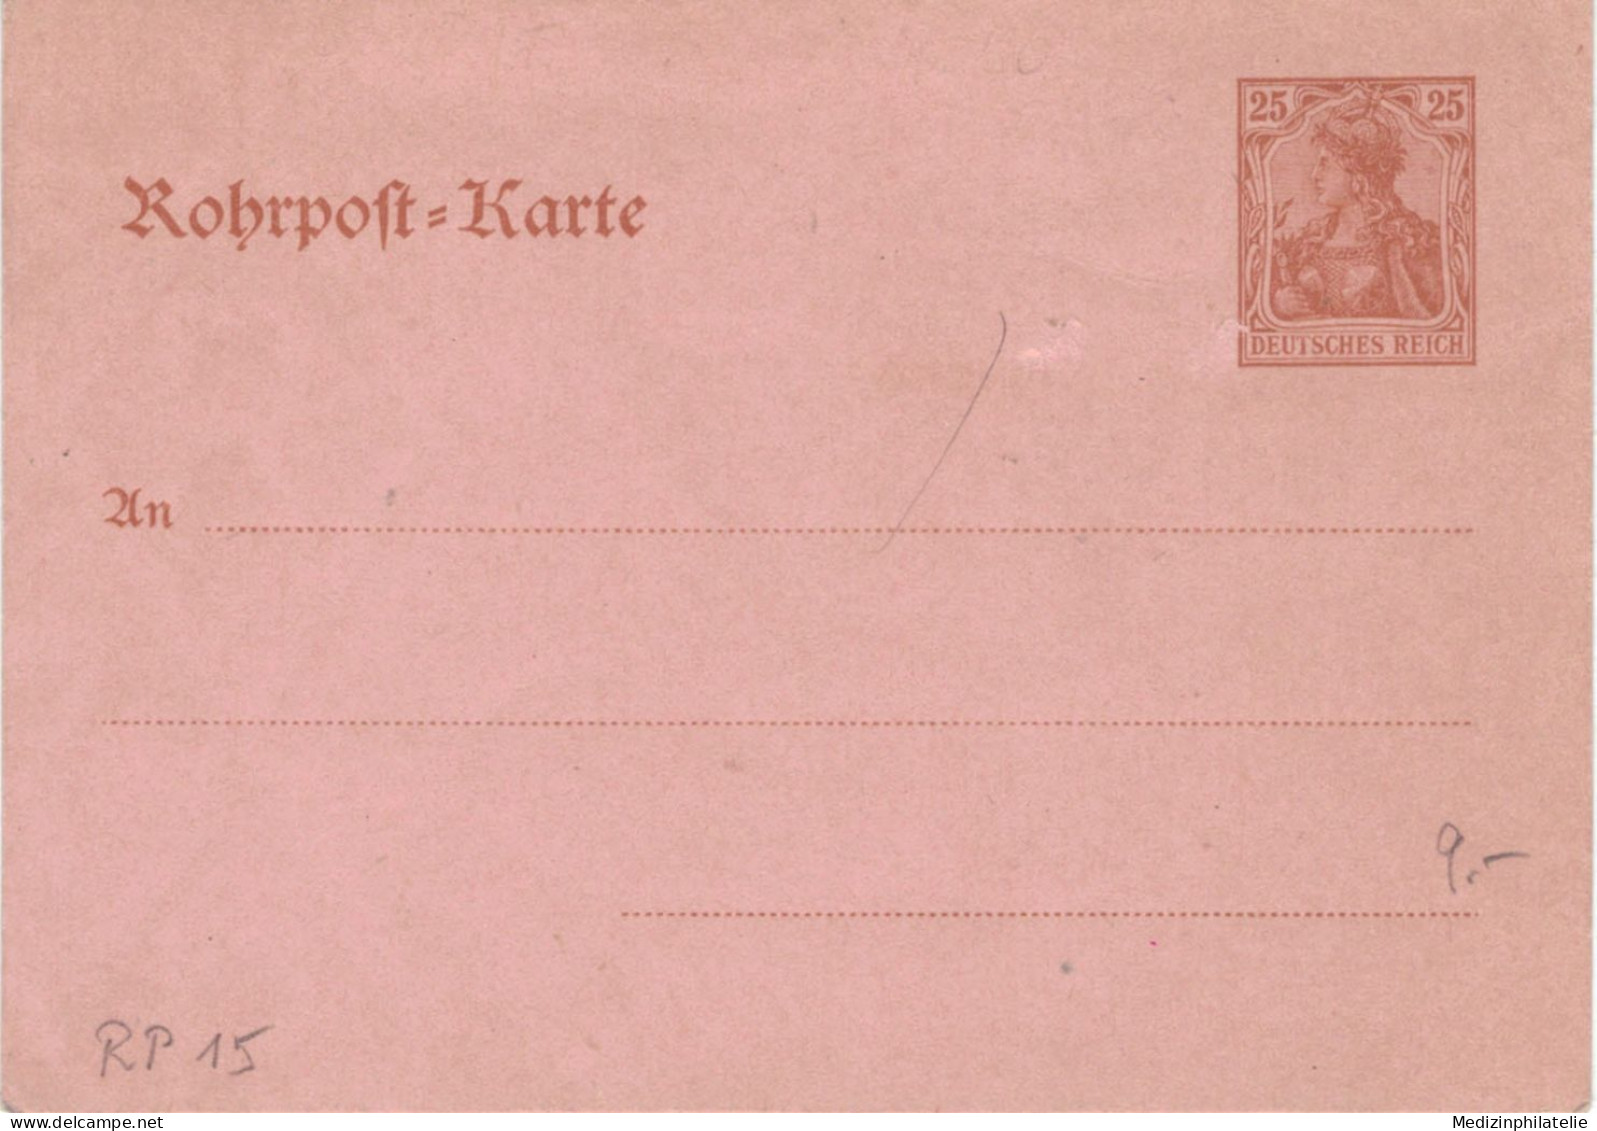 Rohrpost-Karte 25 Pf. Germania - Ungebraucht - 15 - Cartes Postales